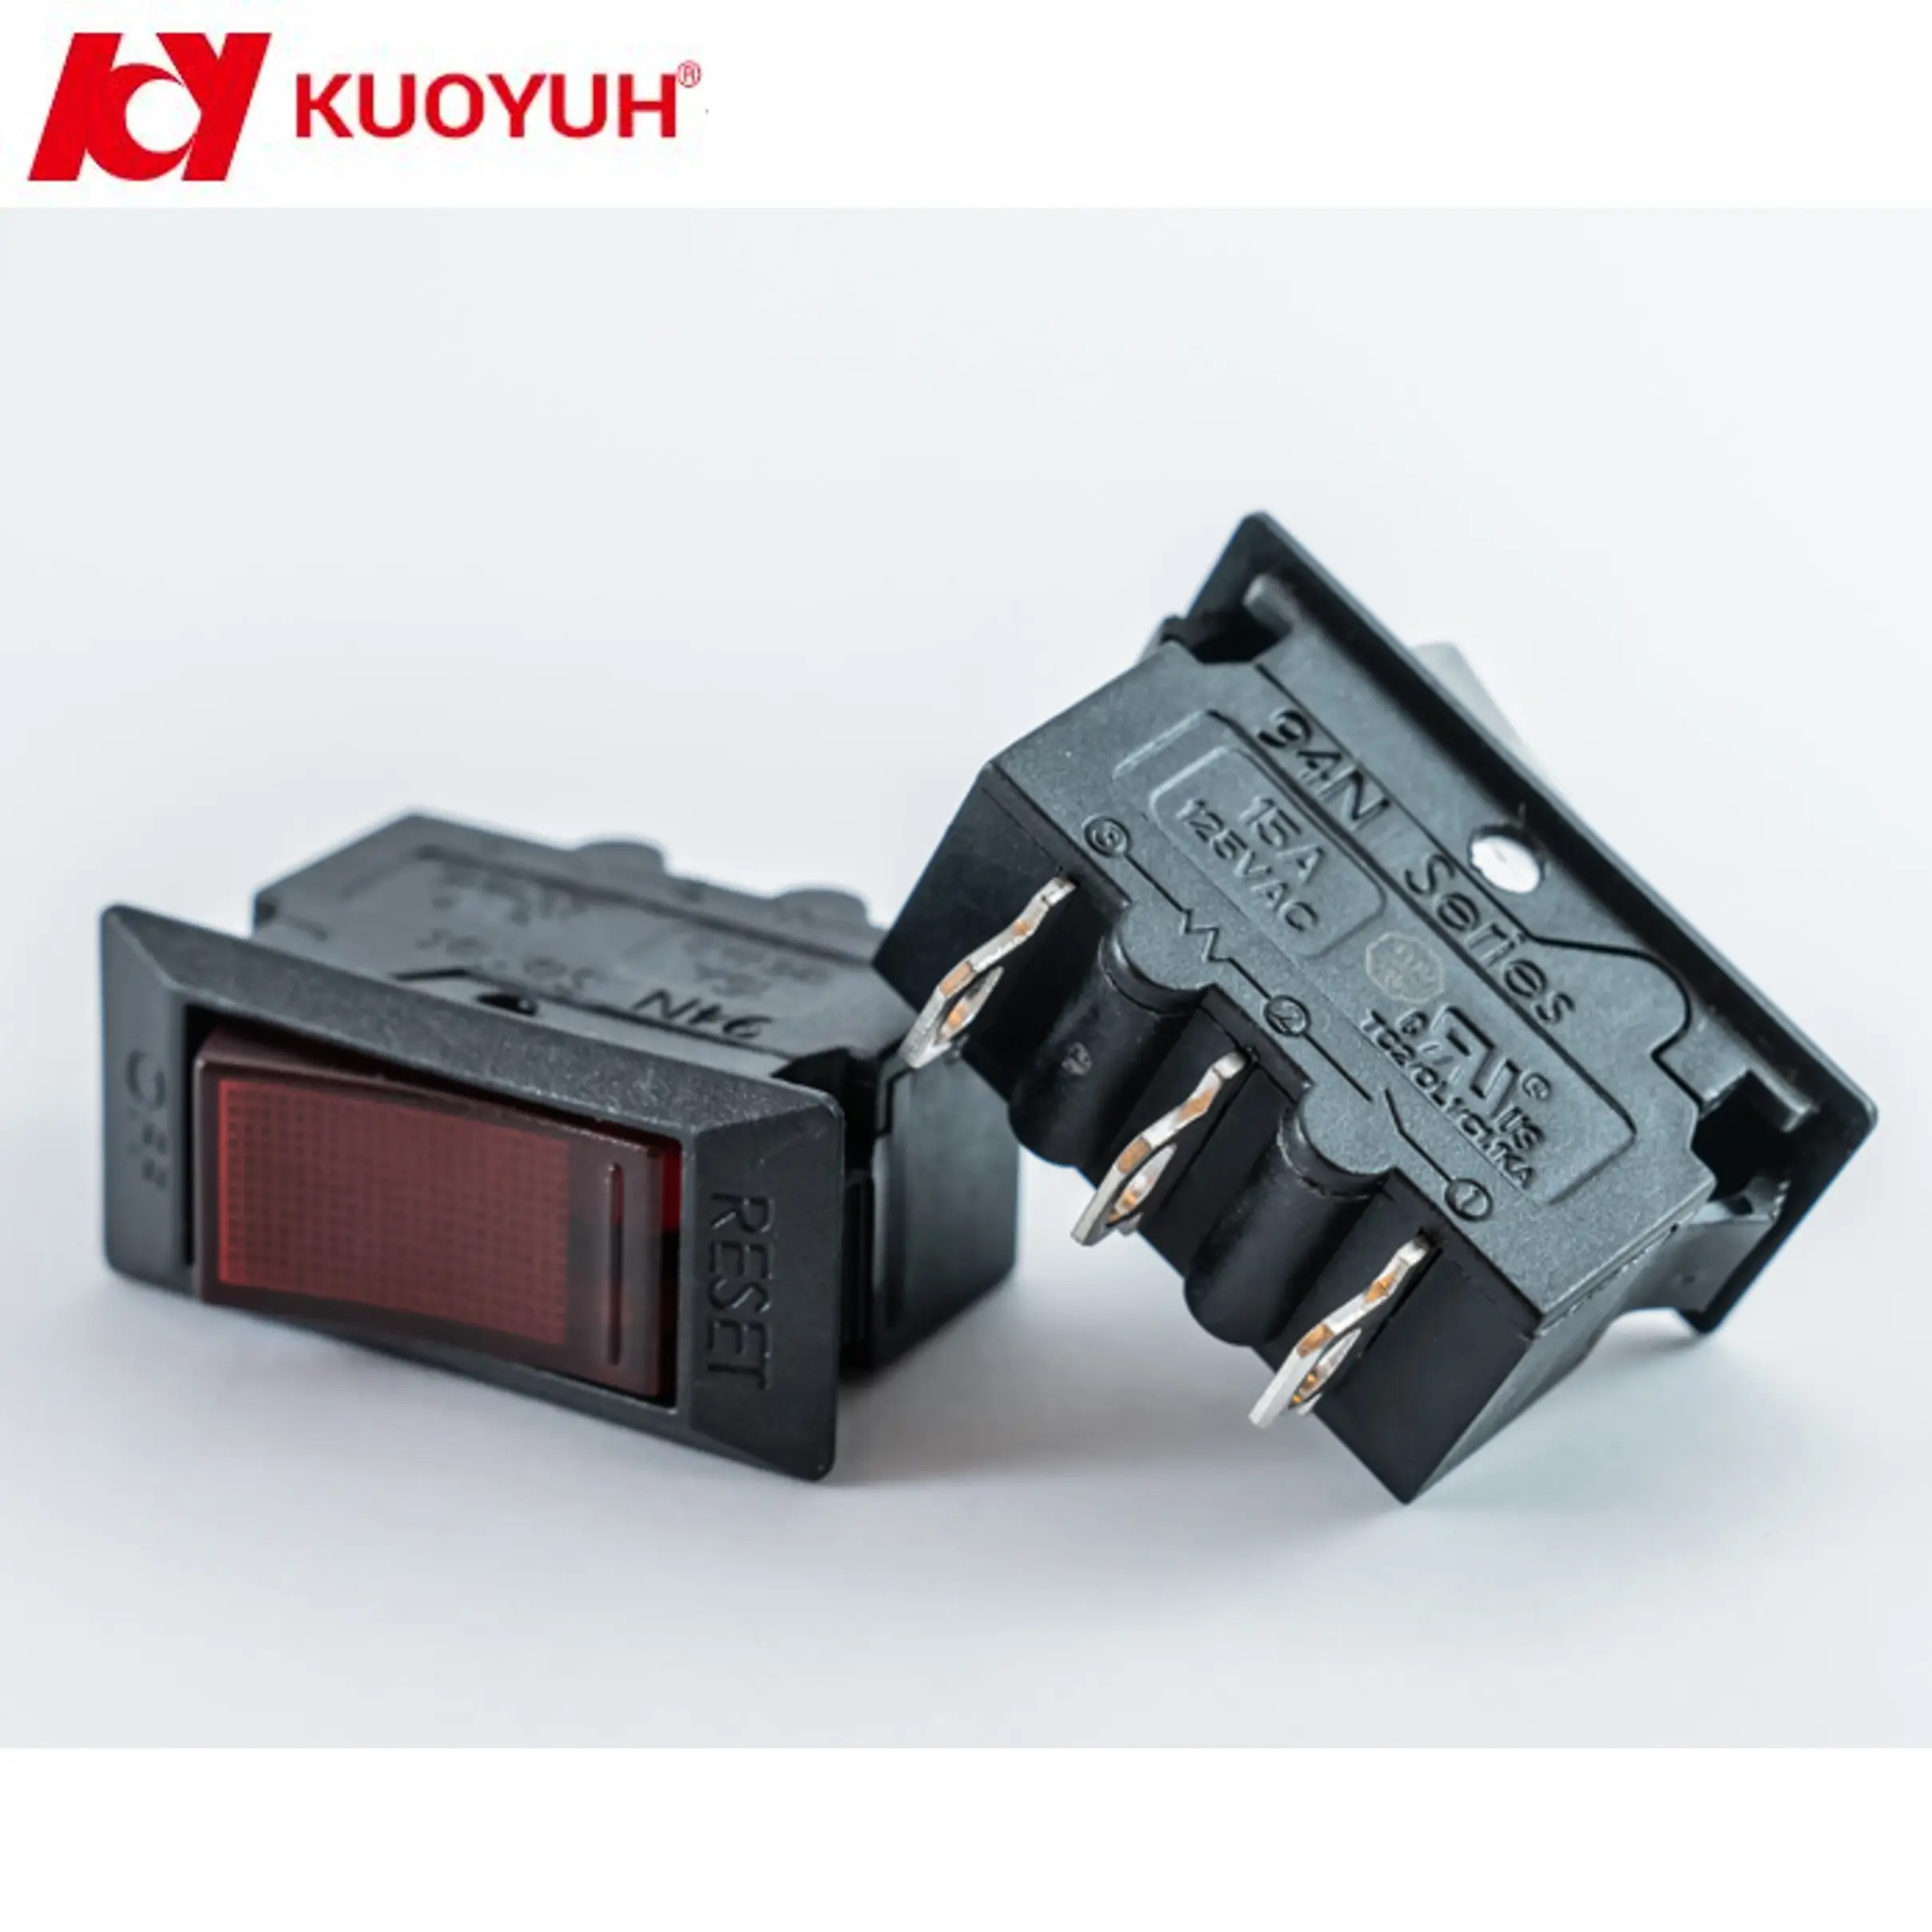 KUOYUH 94N series Светящийся красный клавишный переключатель, ТермоЗащита от перегрузки для удлинителя